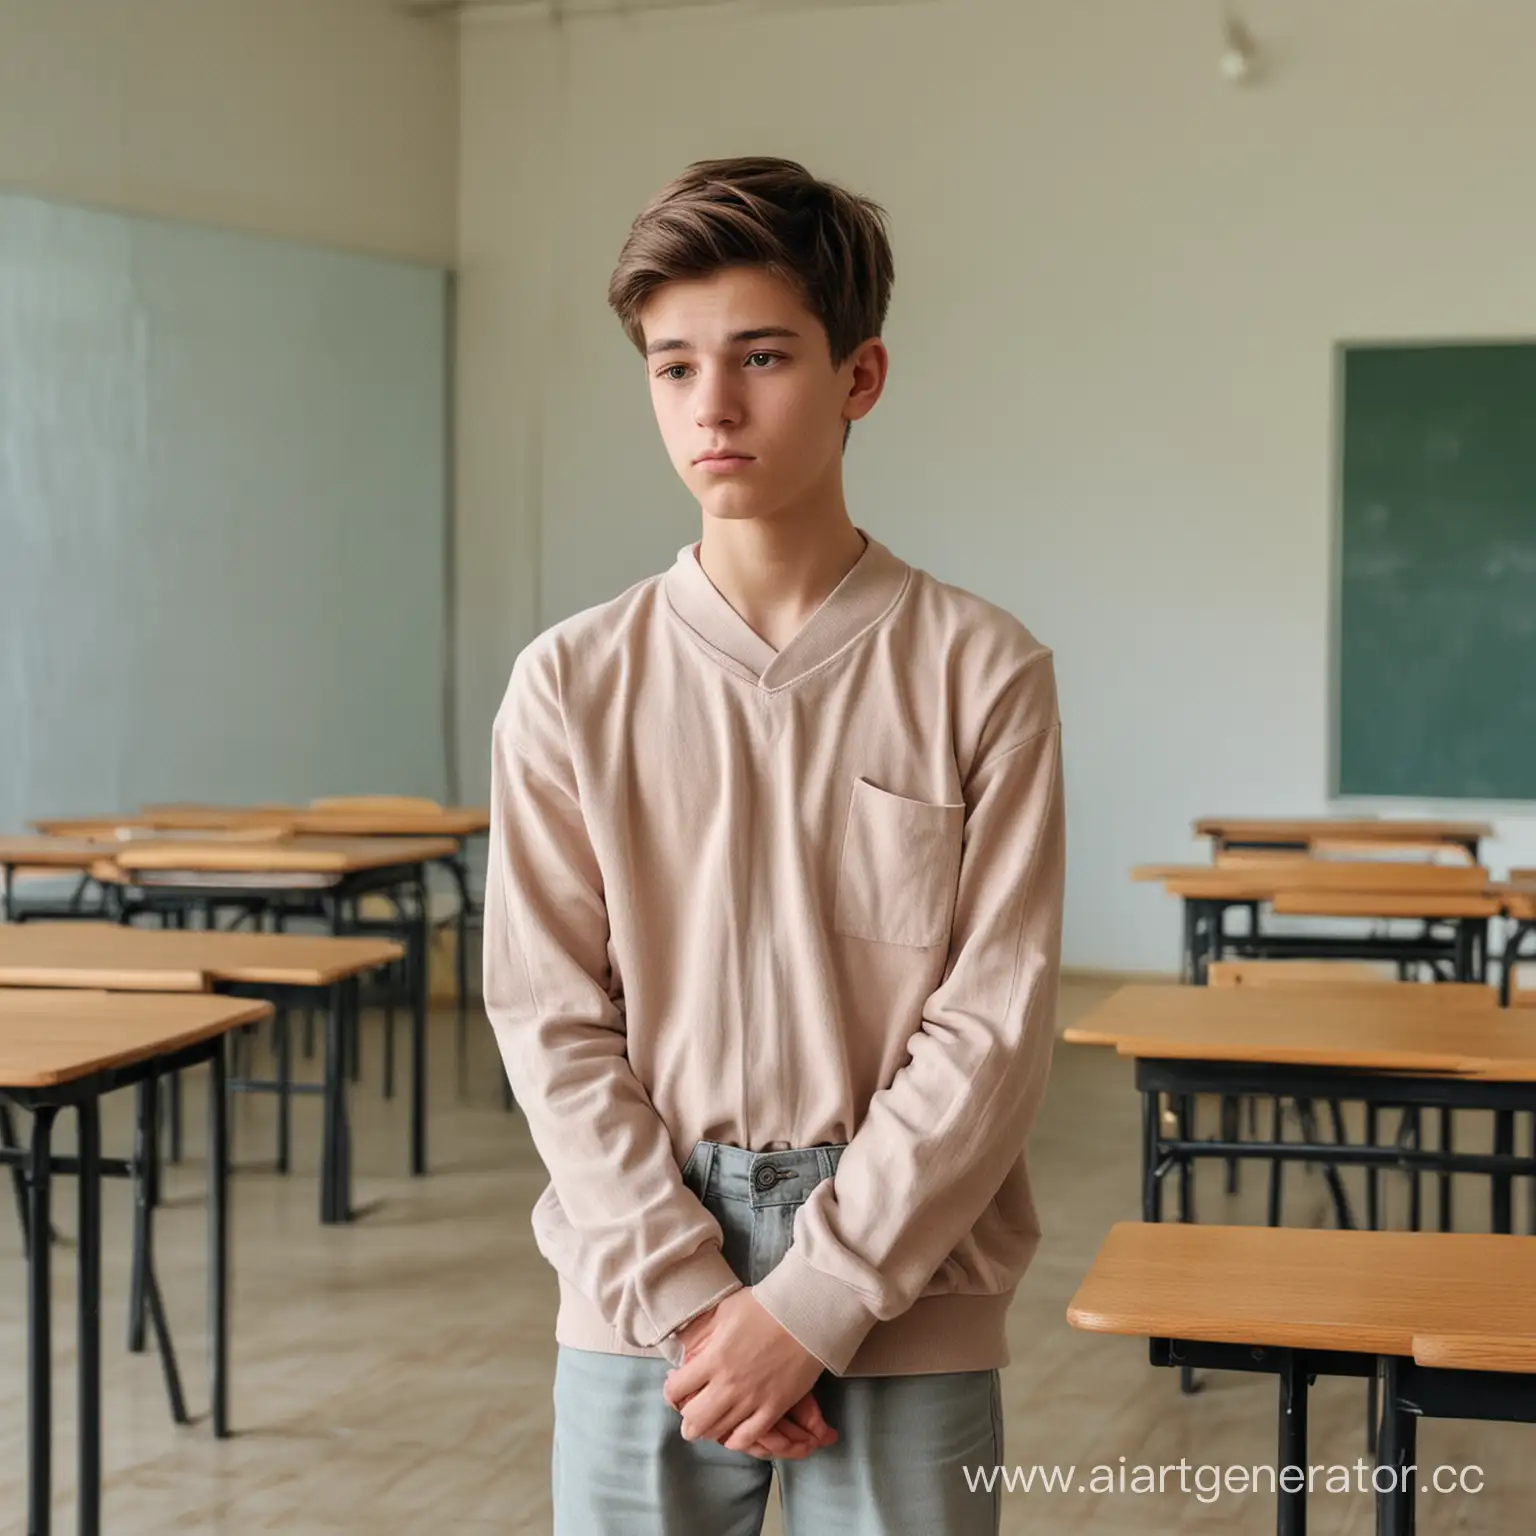 Грустный мальчик подросток 16 лет стоит в закрытой позе в кабинете школы в полный рост одетый в одежду тусклых цветов  и смотрит в пол